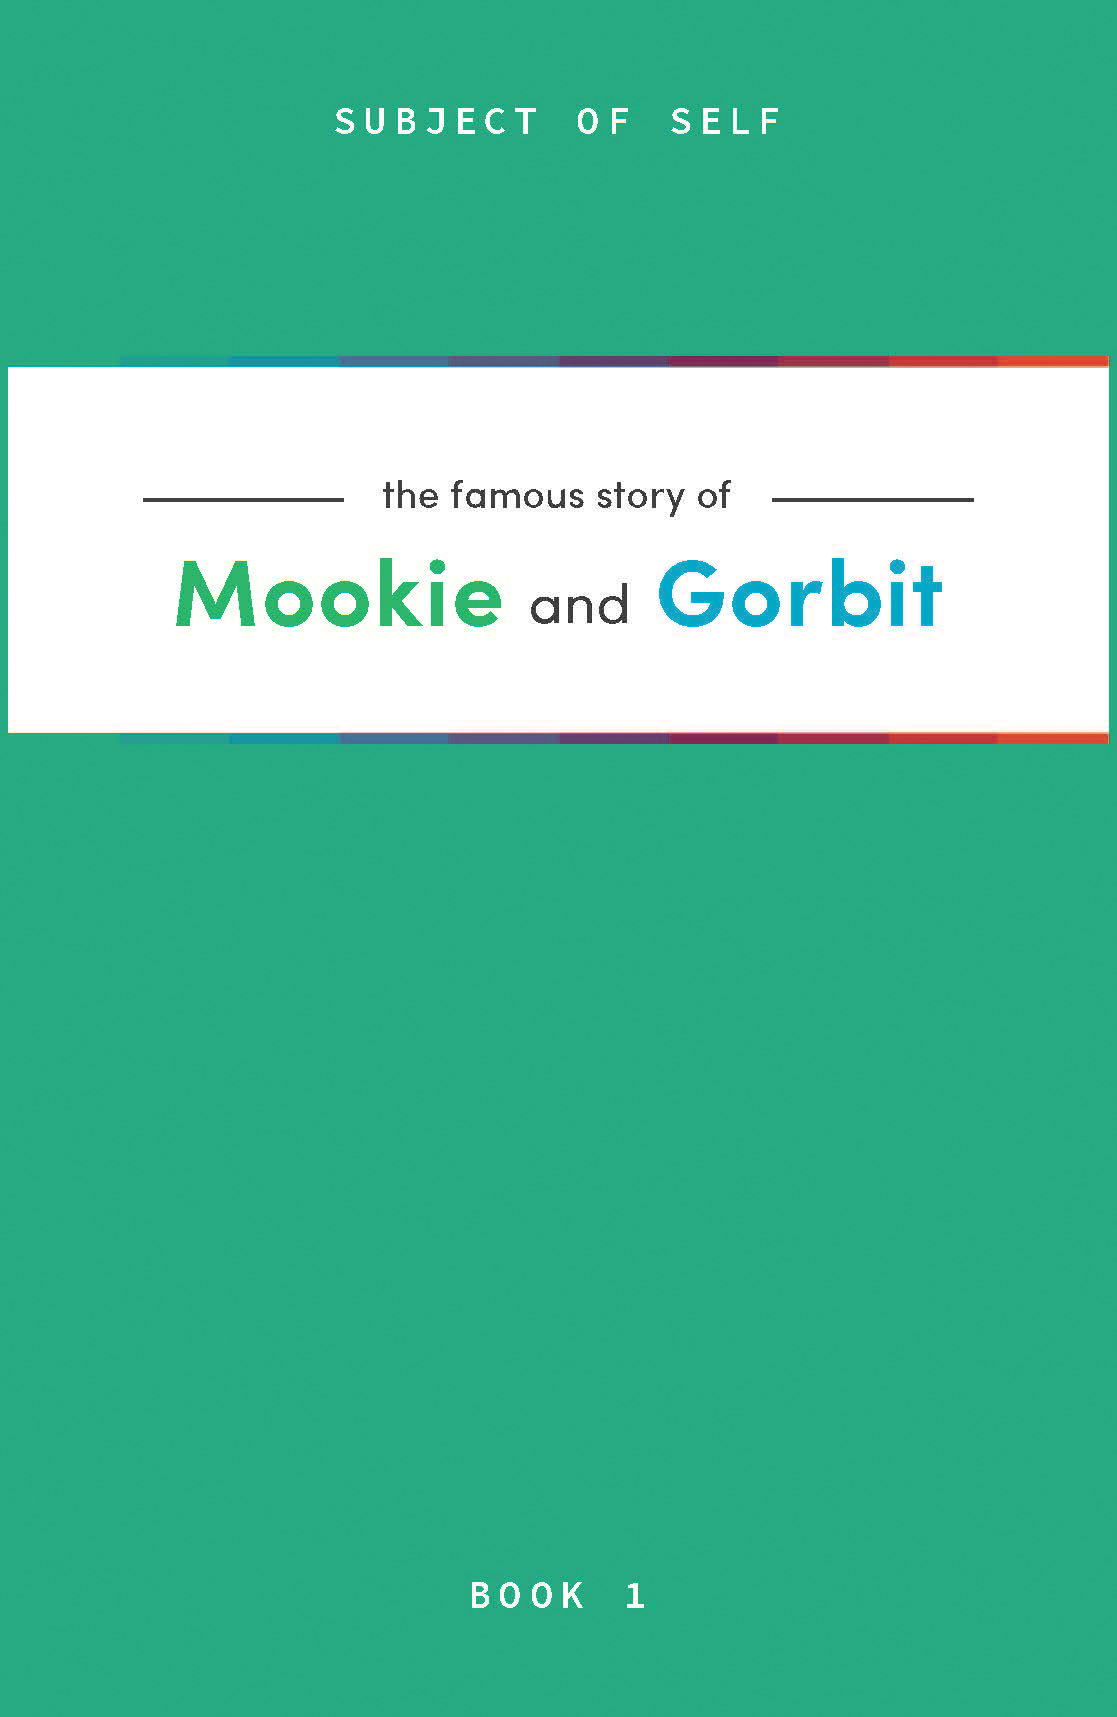 Mookie and Gorbit